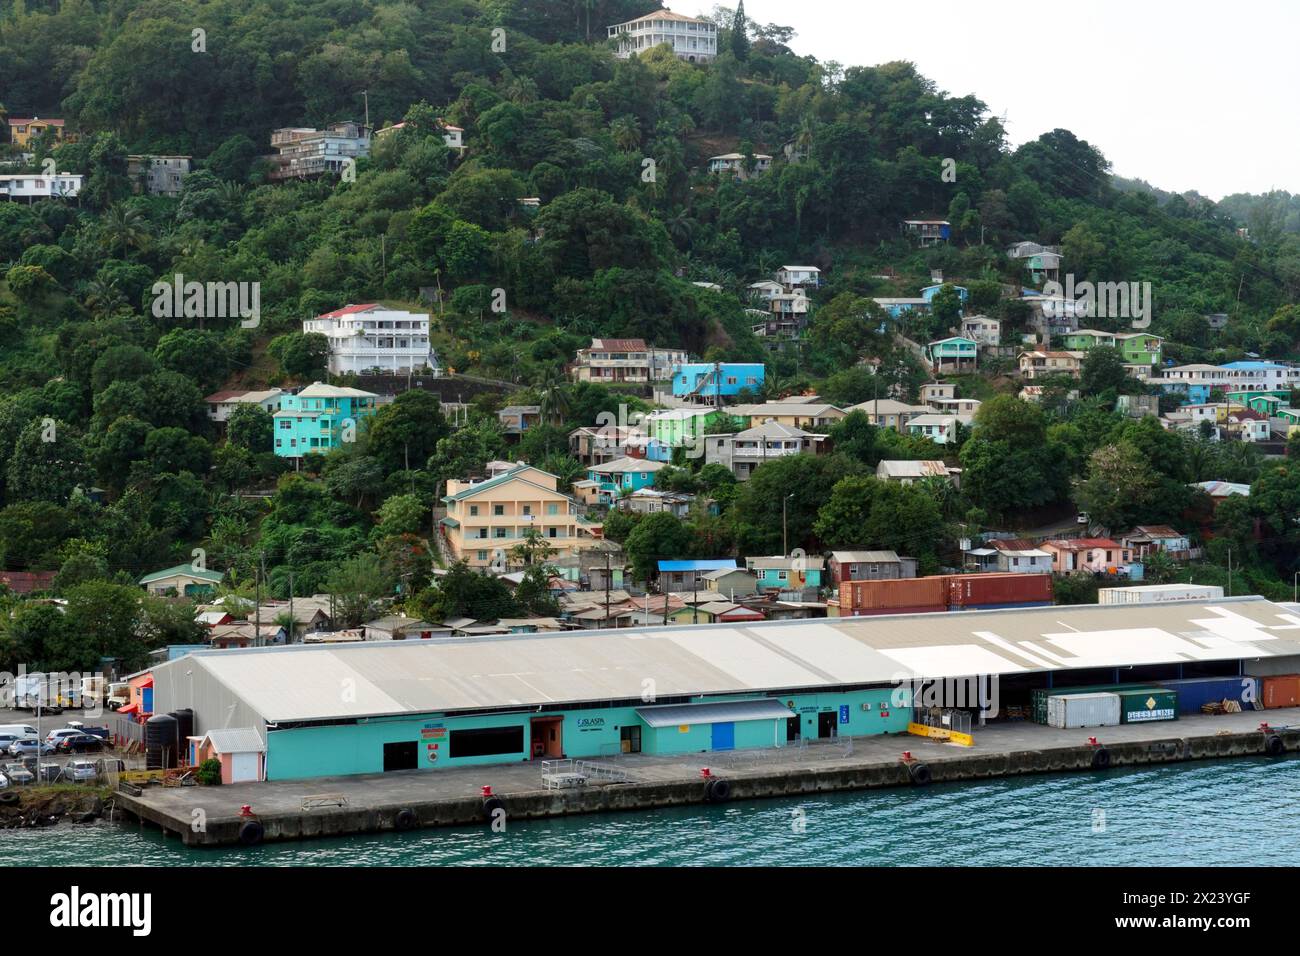 Maisons colorées typiques dans le style des Caraïbes construites sur une colline pleine de végétation verte observée depuis le port de chargement de conteneurs. Banque D'Images